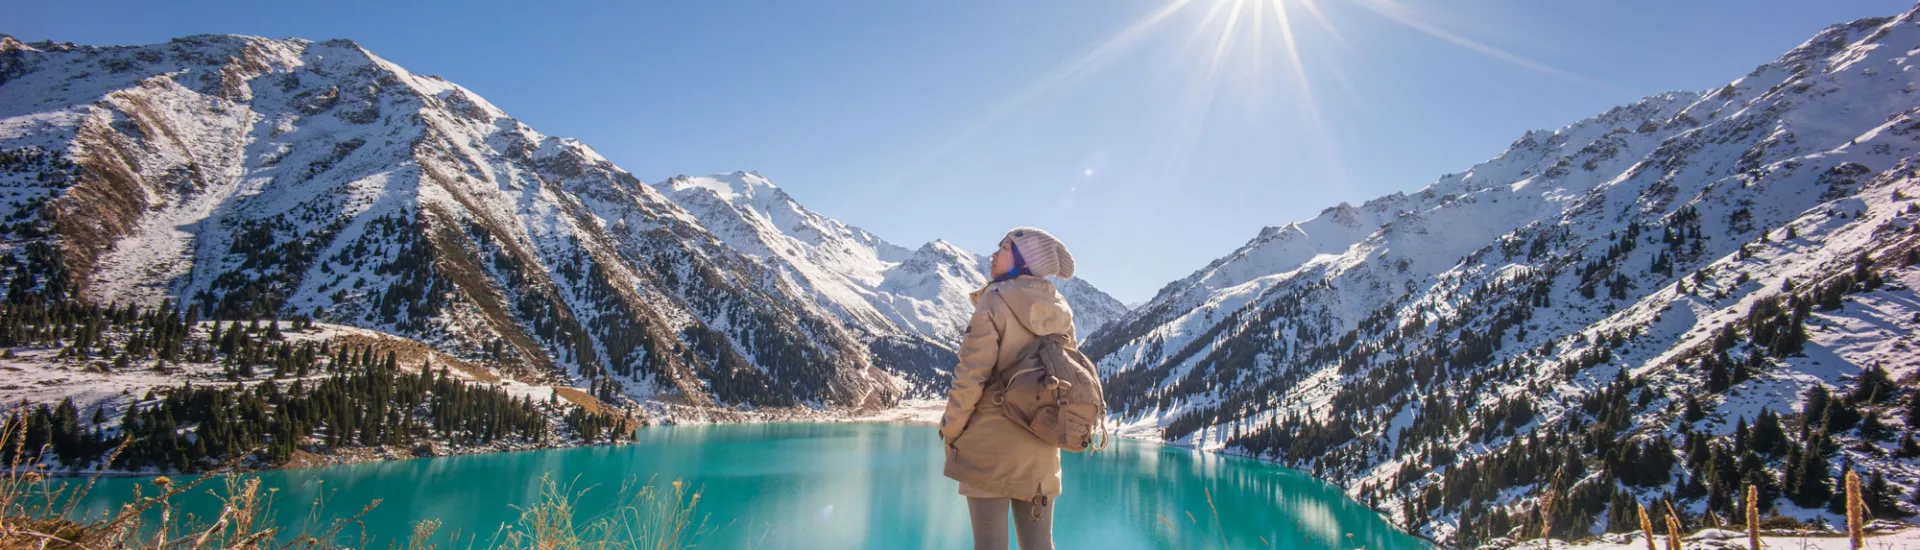 Frau erkundet Almaty See bei Sonnenschein zu Winterbeginn.